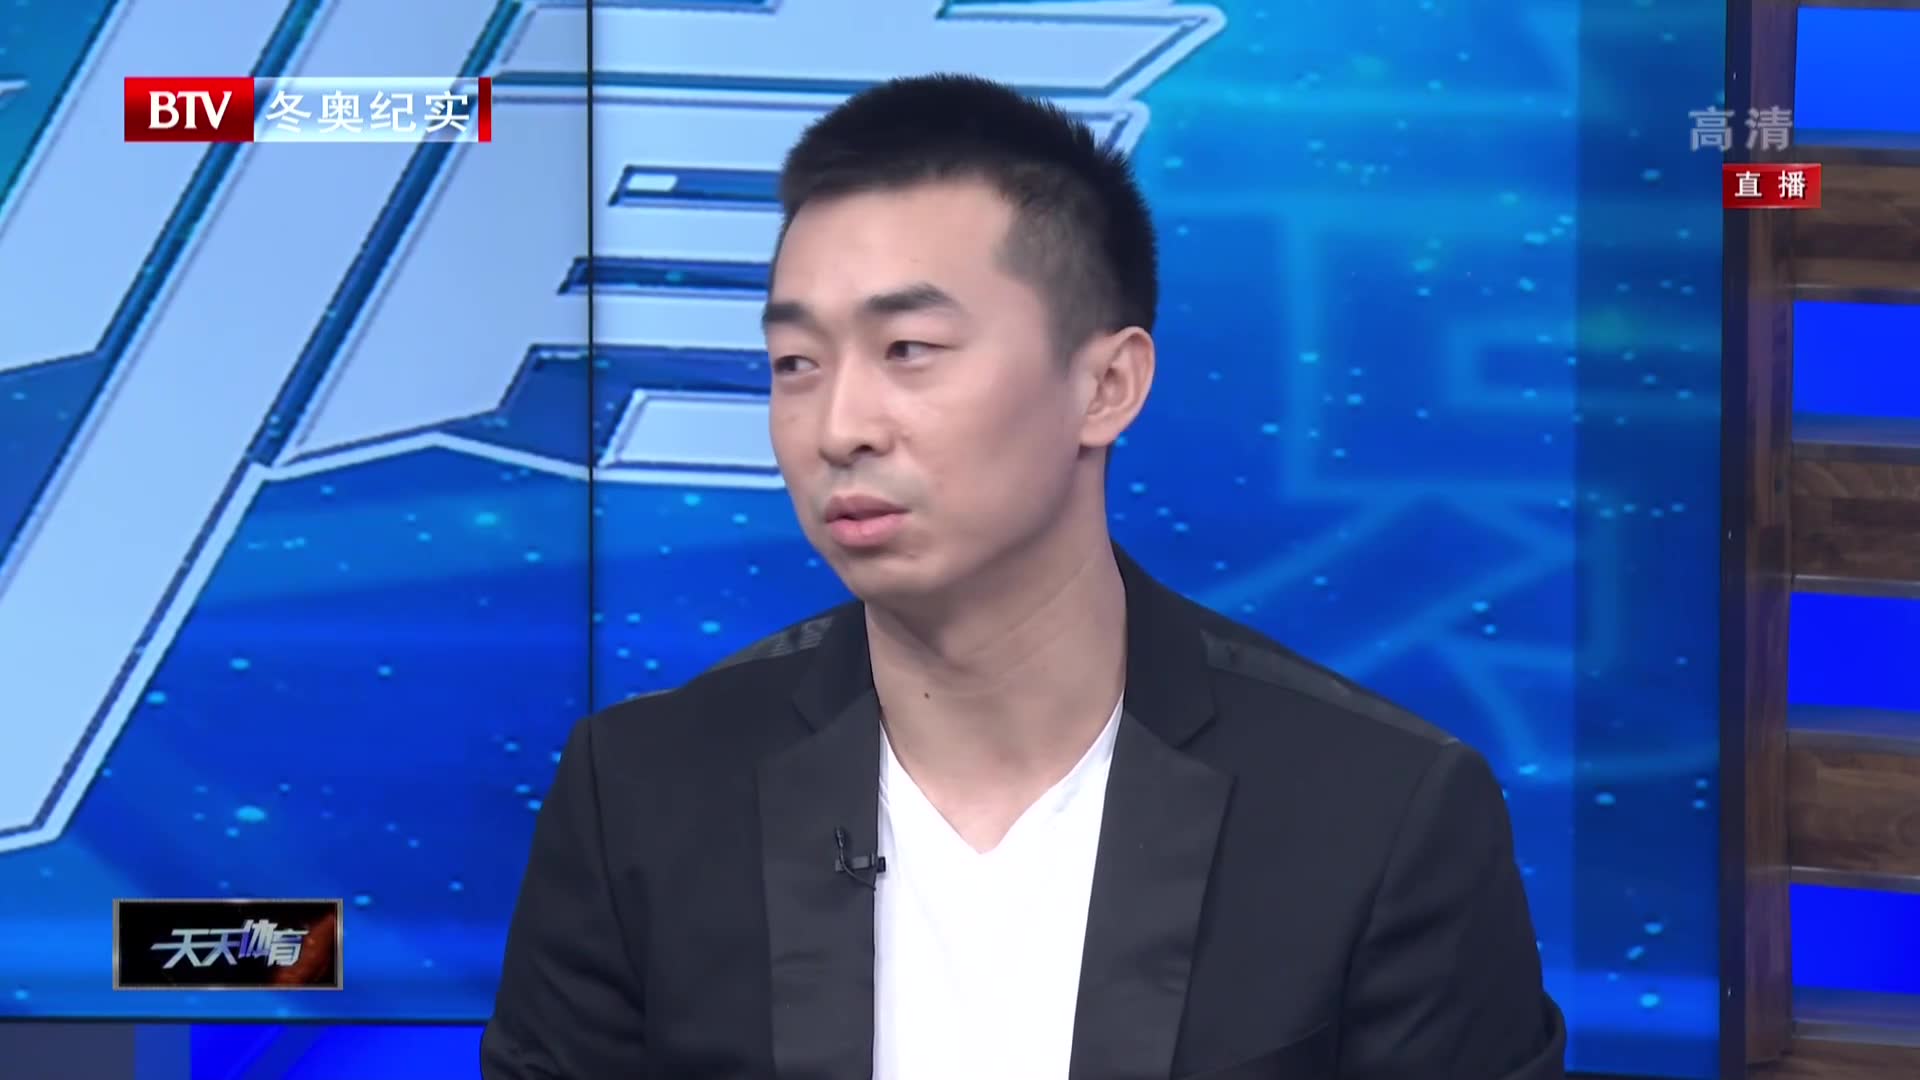 王骁辉首次回应遭网络暴力:至今仍不太愿意提及,一度萌生退役想法